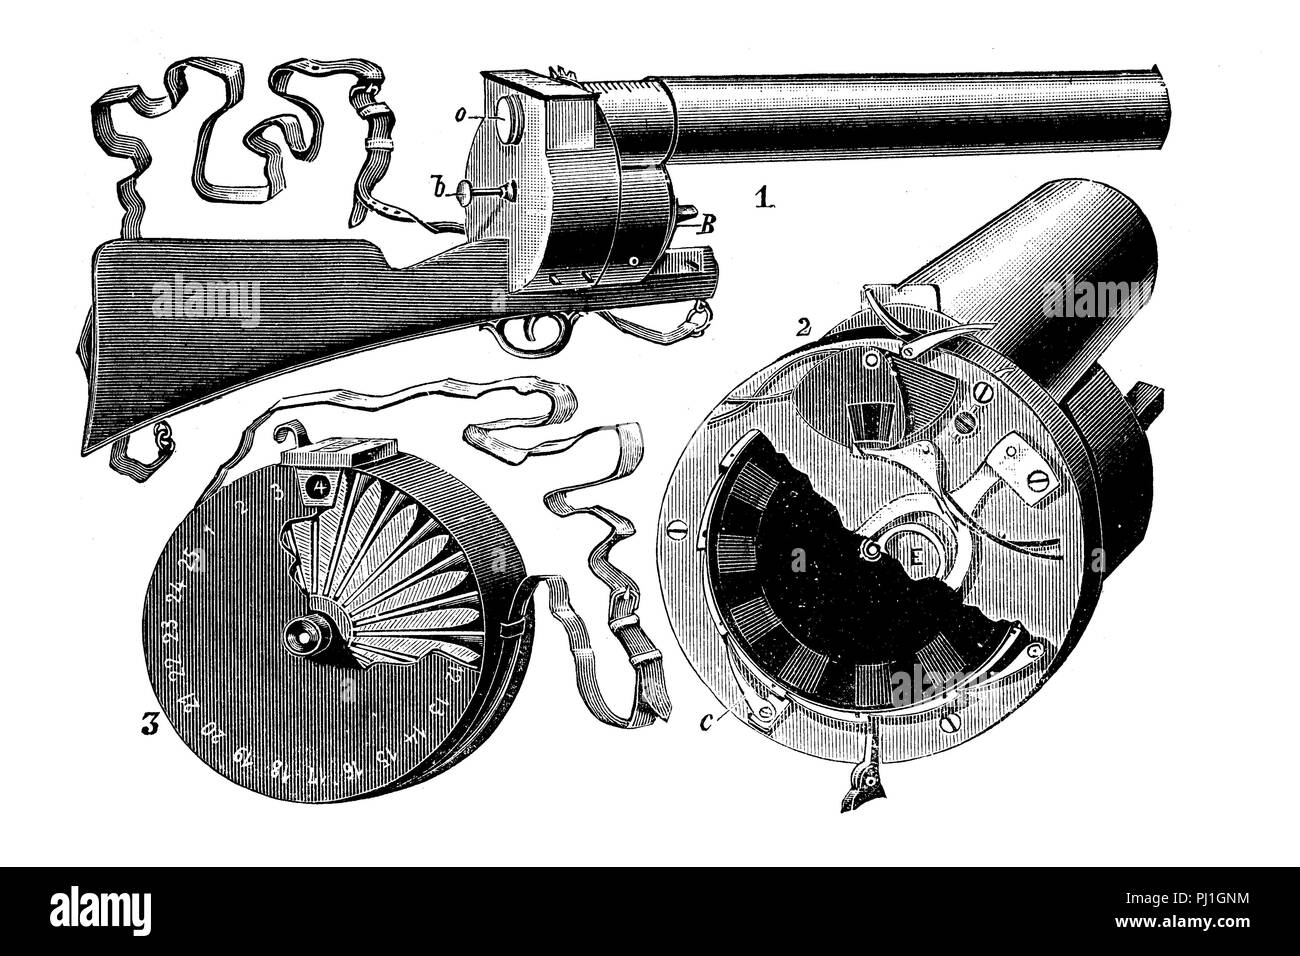 Il chronophotographic fucile, fucile fotografico, è stato inventato dal fisiologo francese étienne-jules marey nel 1883, che ha consentito di avvistamento e di fotografare oggetti spostati nello spazio digitale Riproduzione migliorata di un woodprint dall'anno 1890 Foto Stock